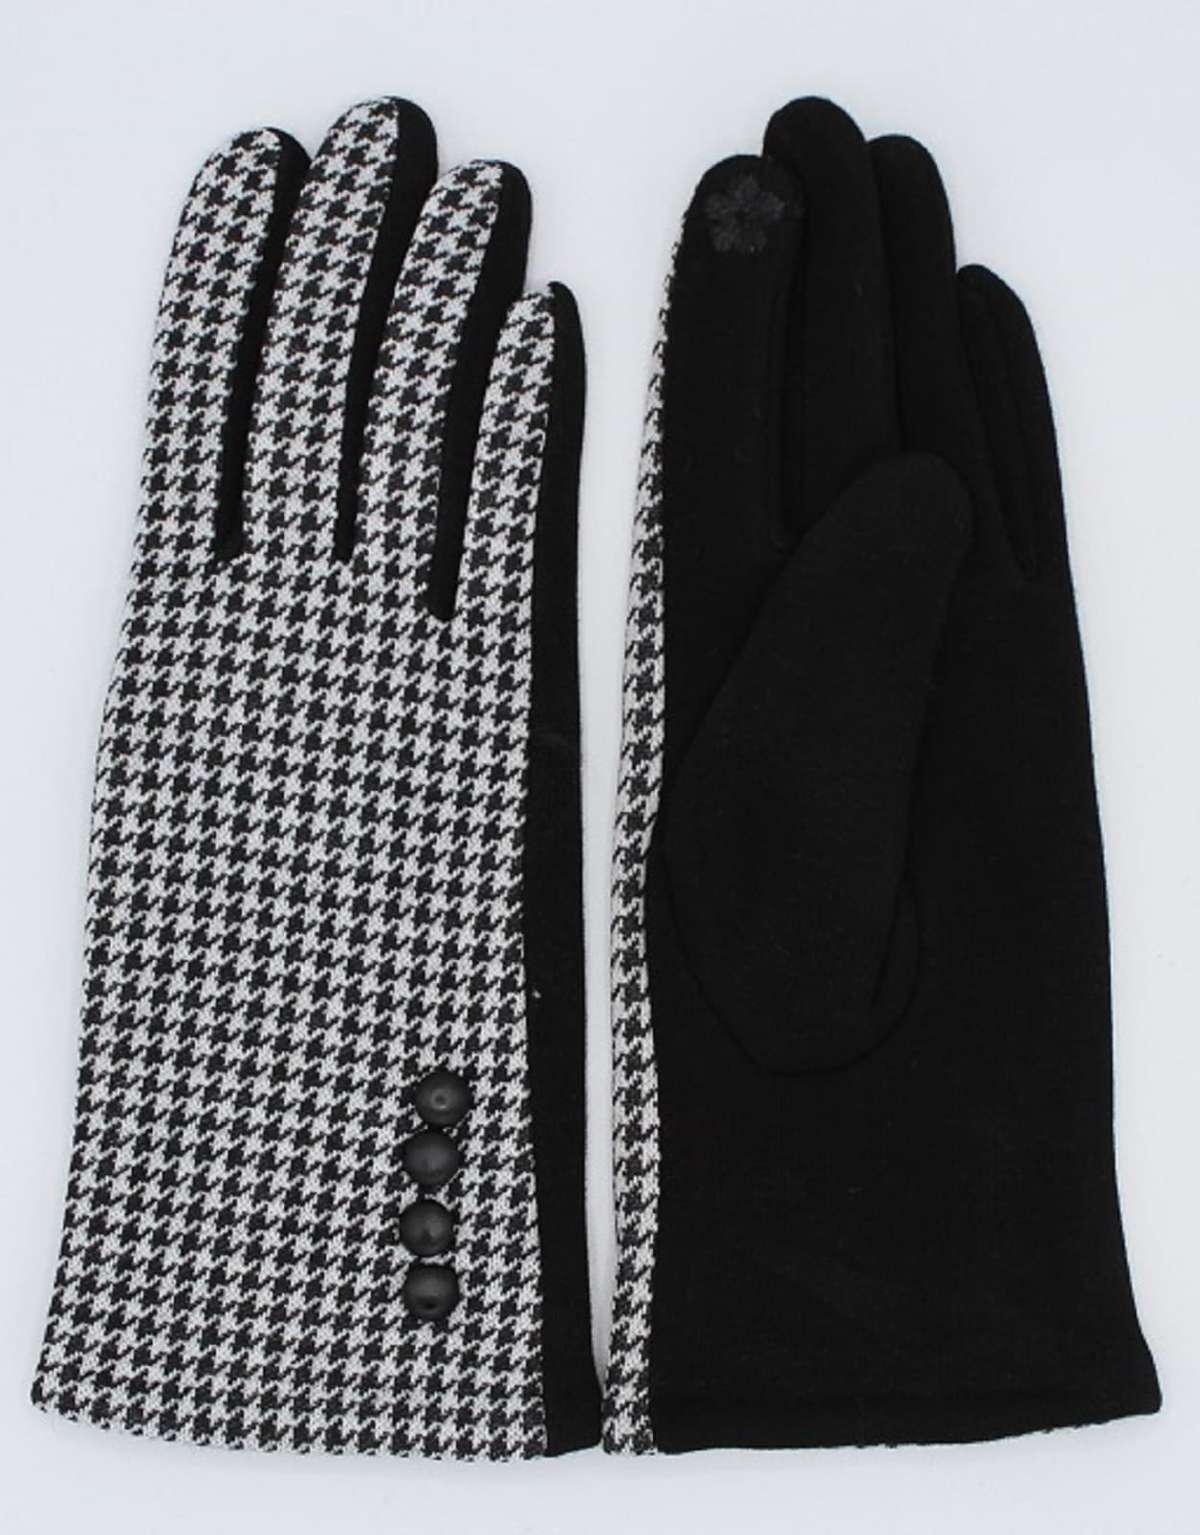 Кожаные перчатки с модным узором «гусиные лапки».